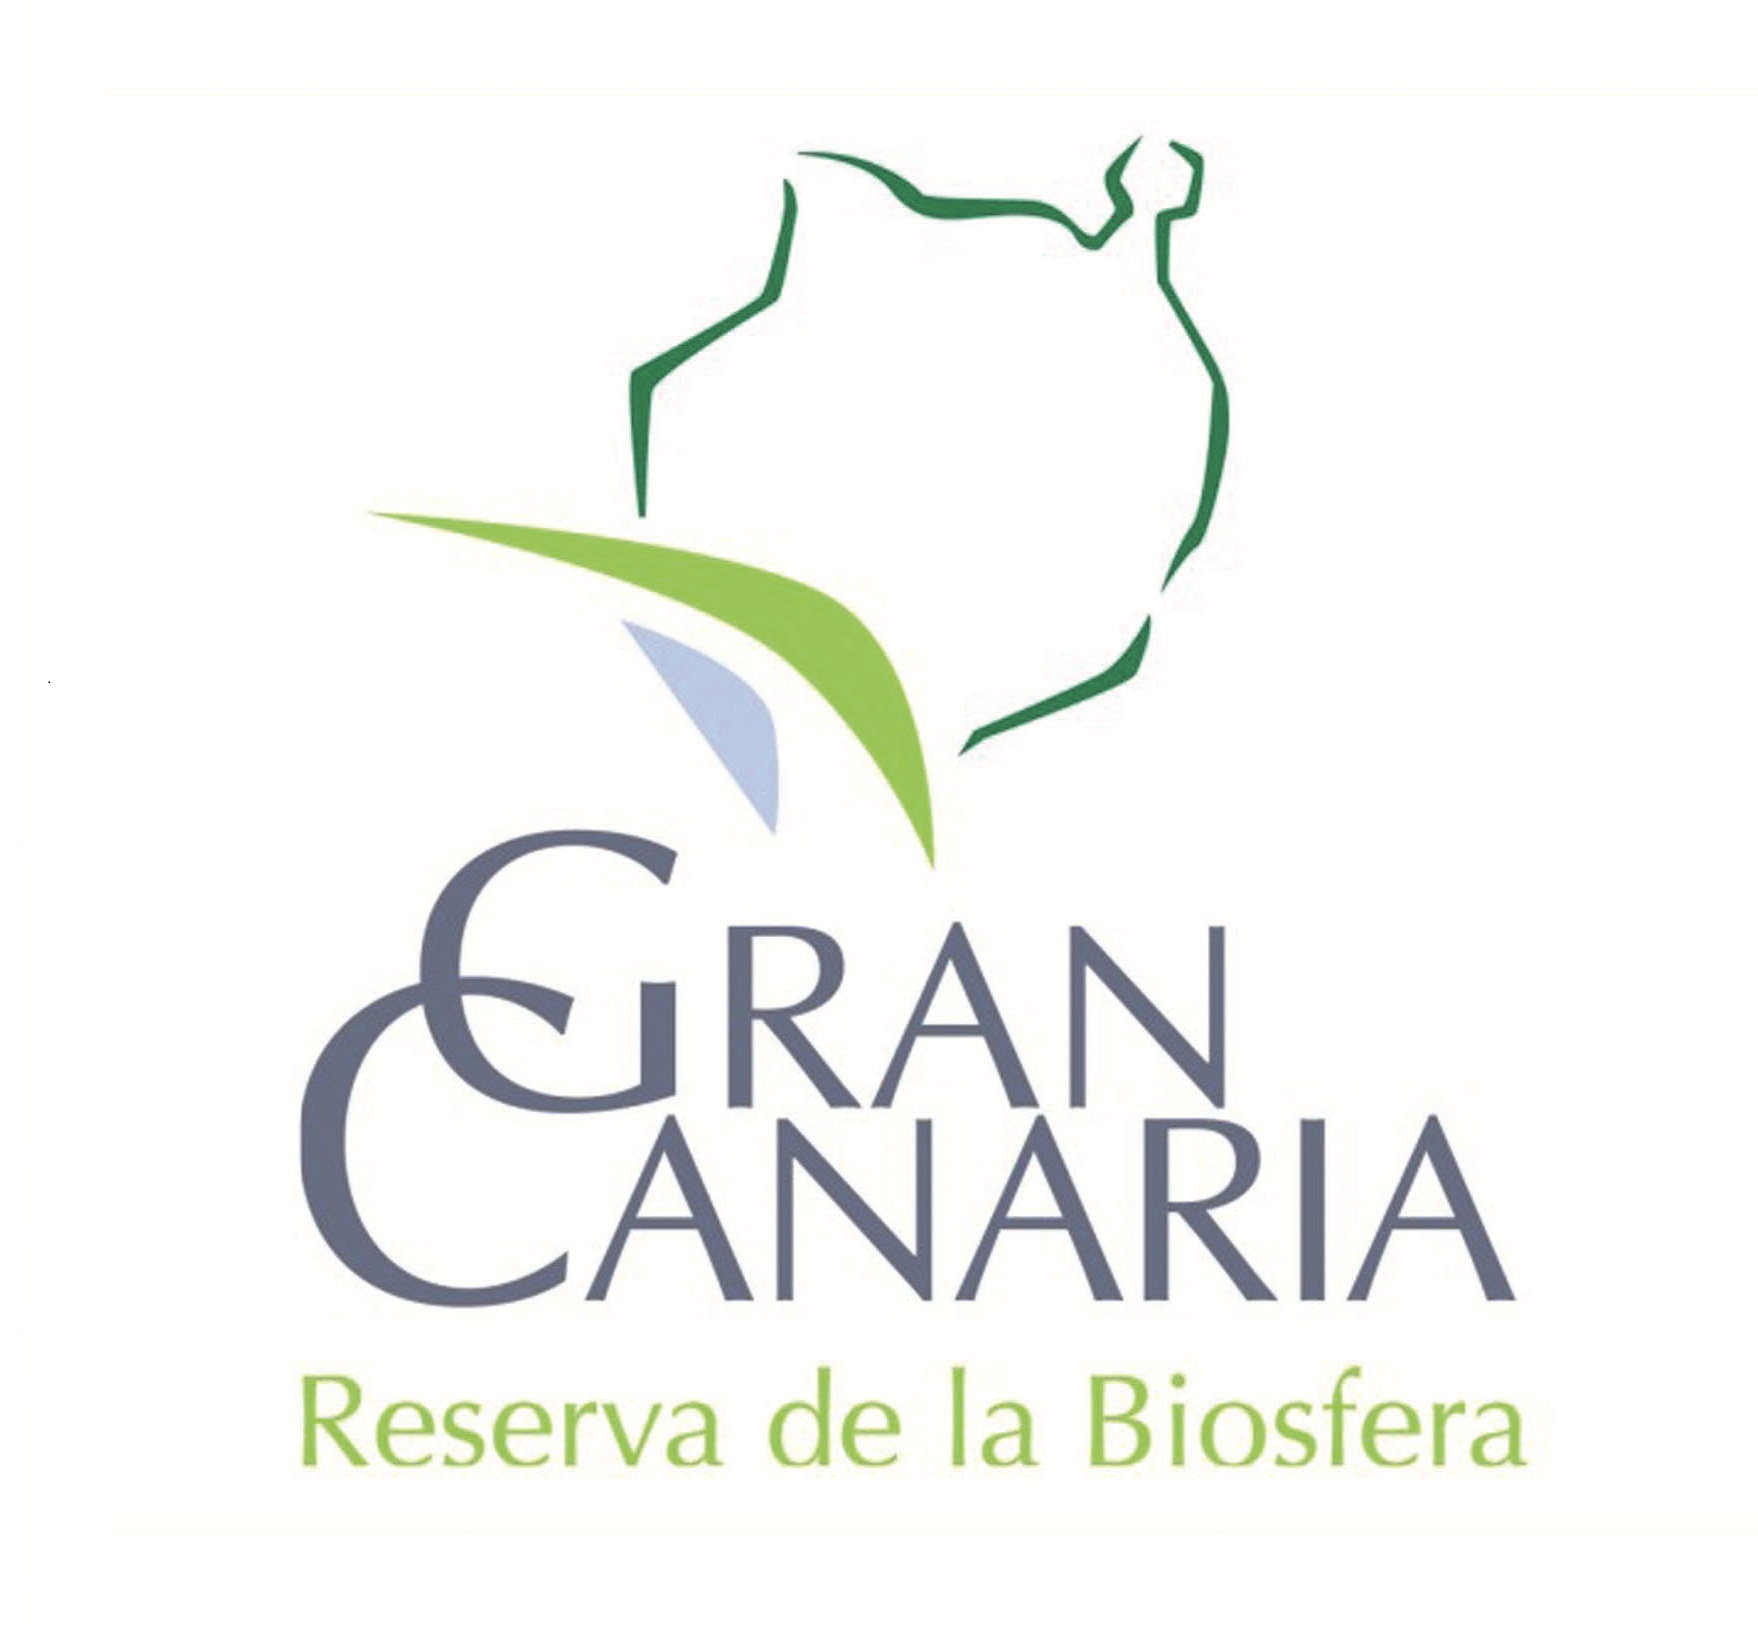 Emprendiendo una nueva experiencia: hacia la Reserva de la Biosfera de Gran Canaria